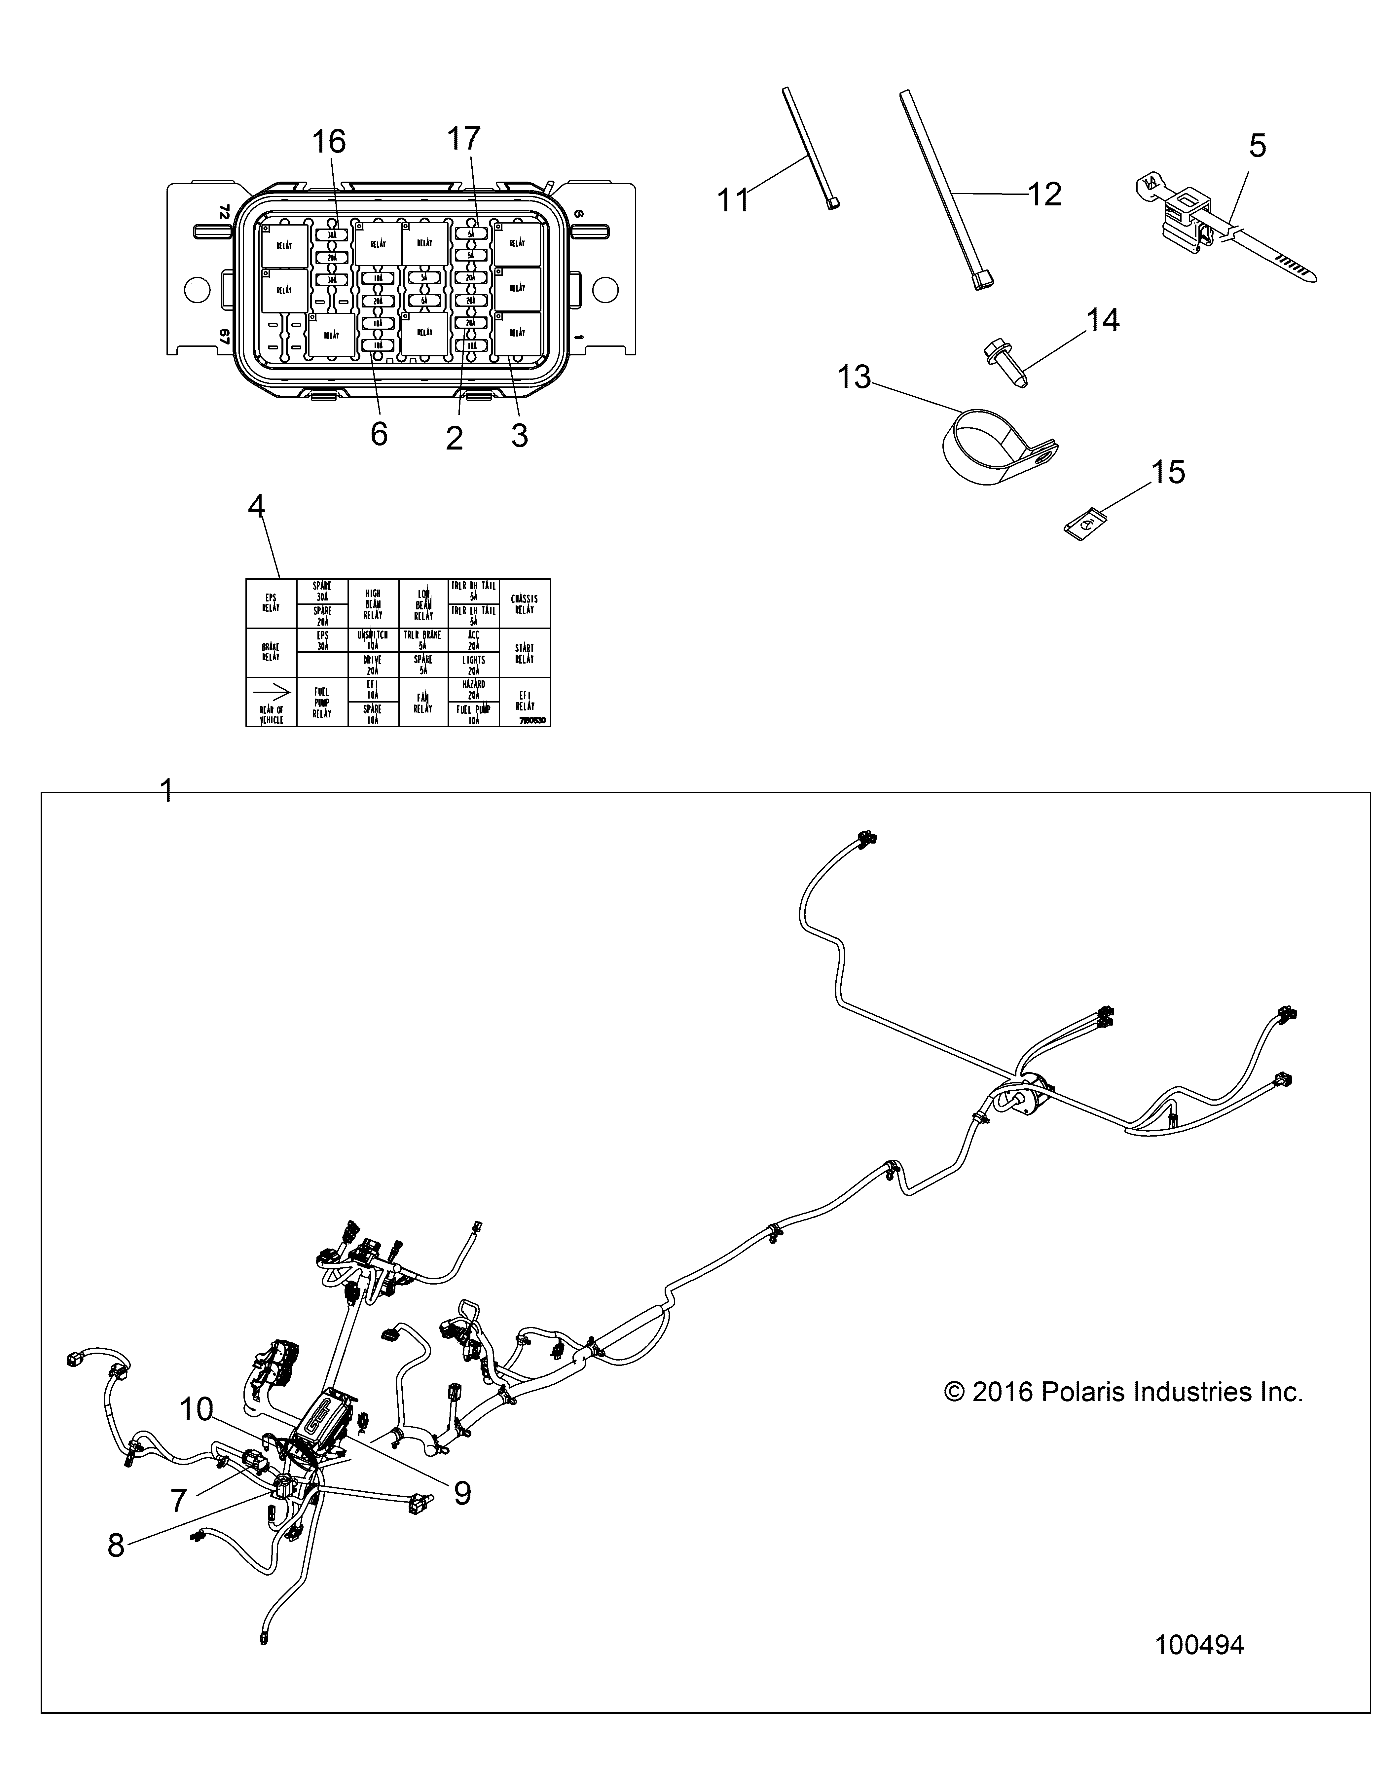 Foto diagrama Polaris que contem a peça 7180530